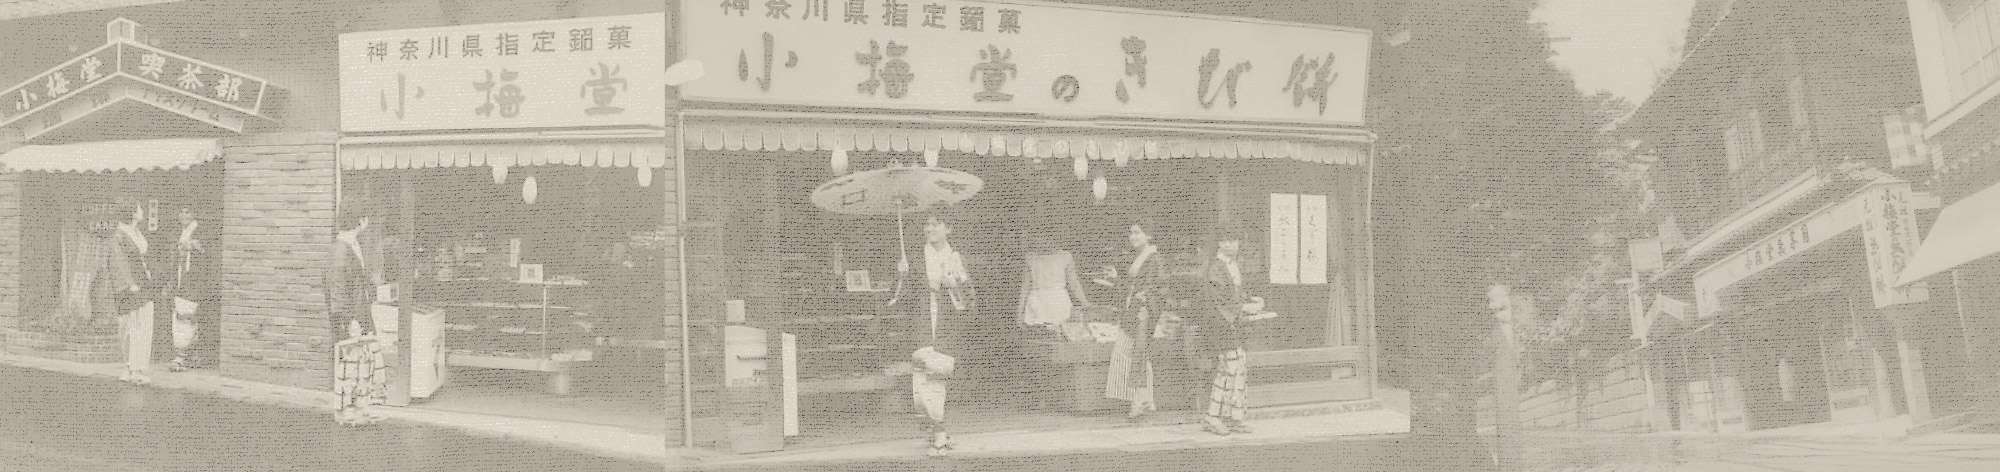 昭和の小梅堂の店先と、小梅堂周辺の街並み